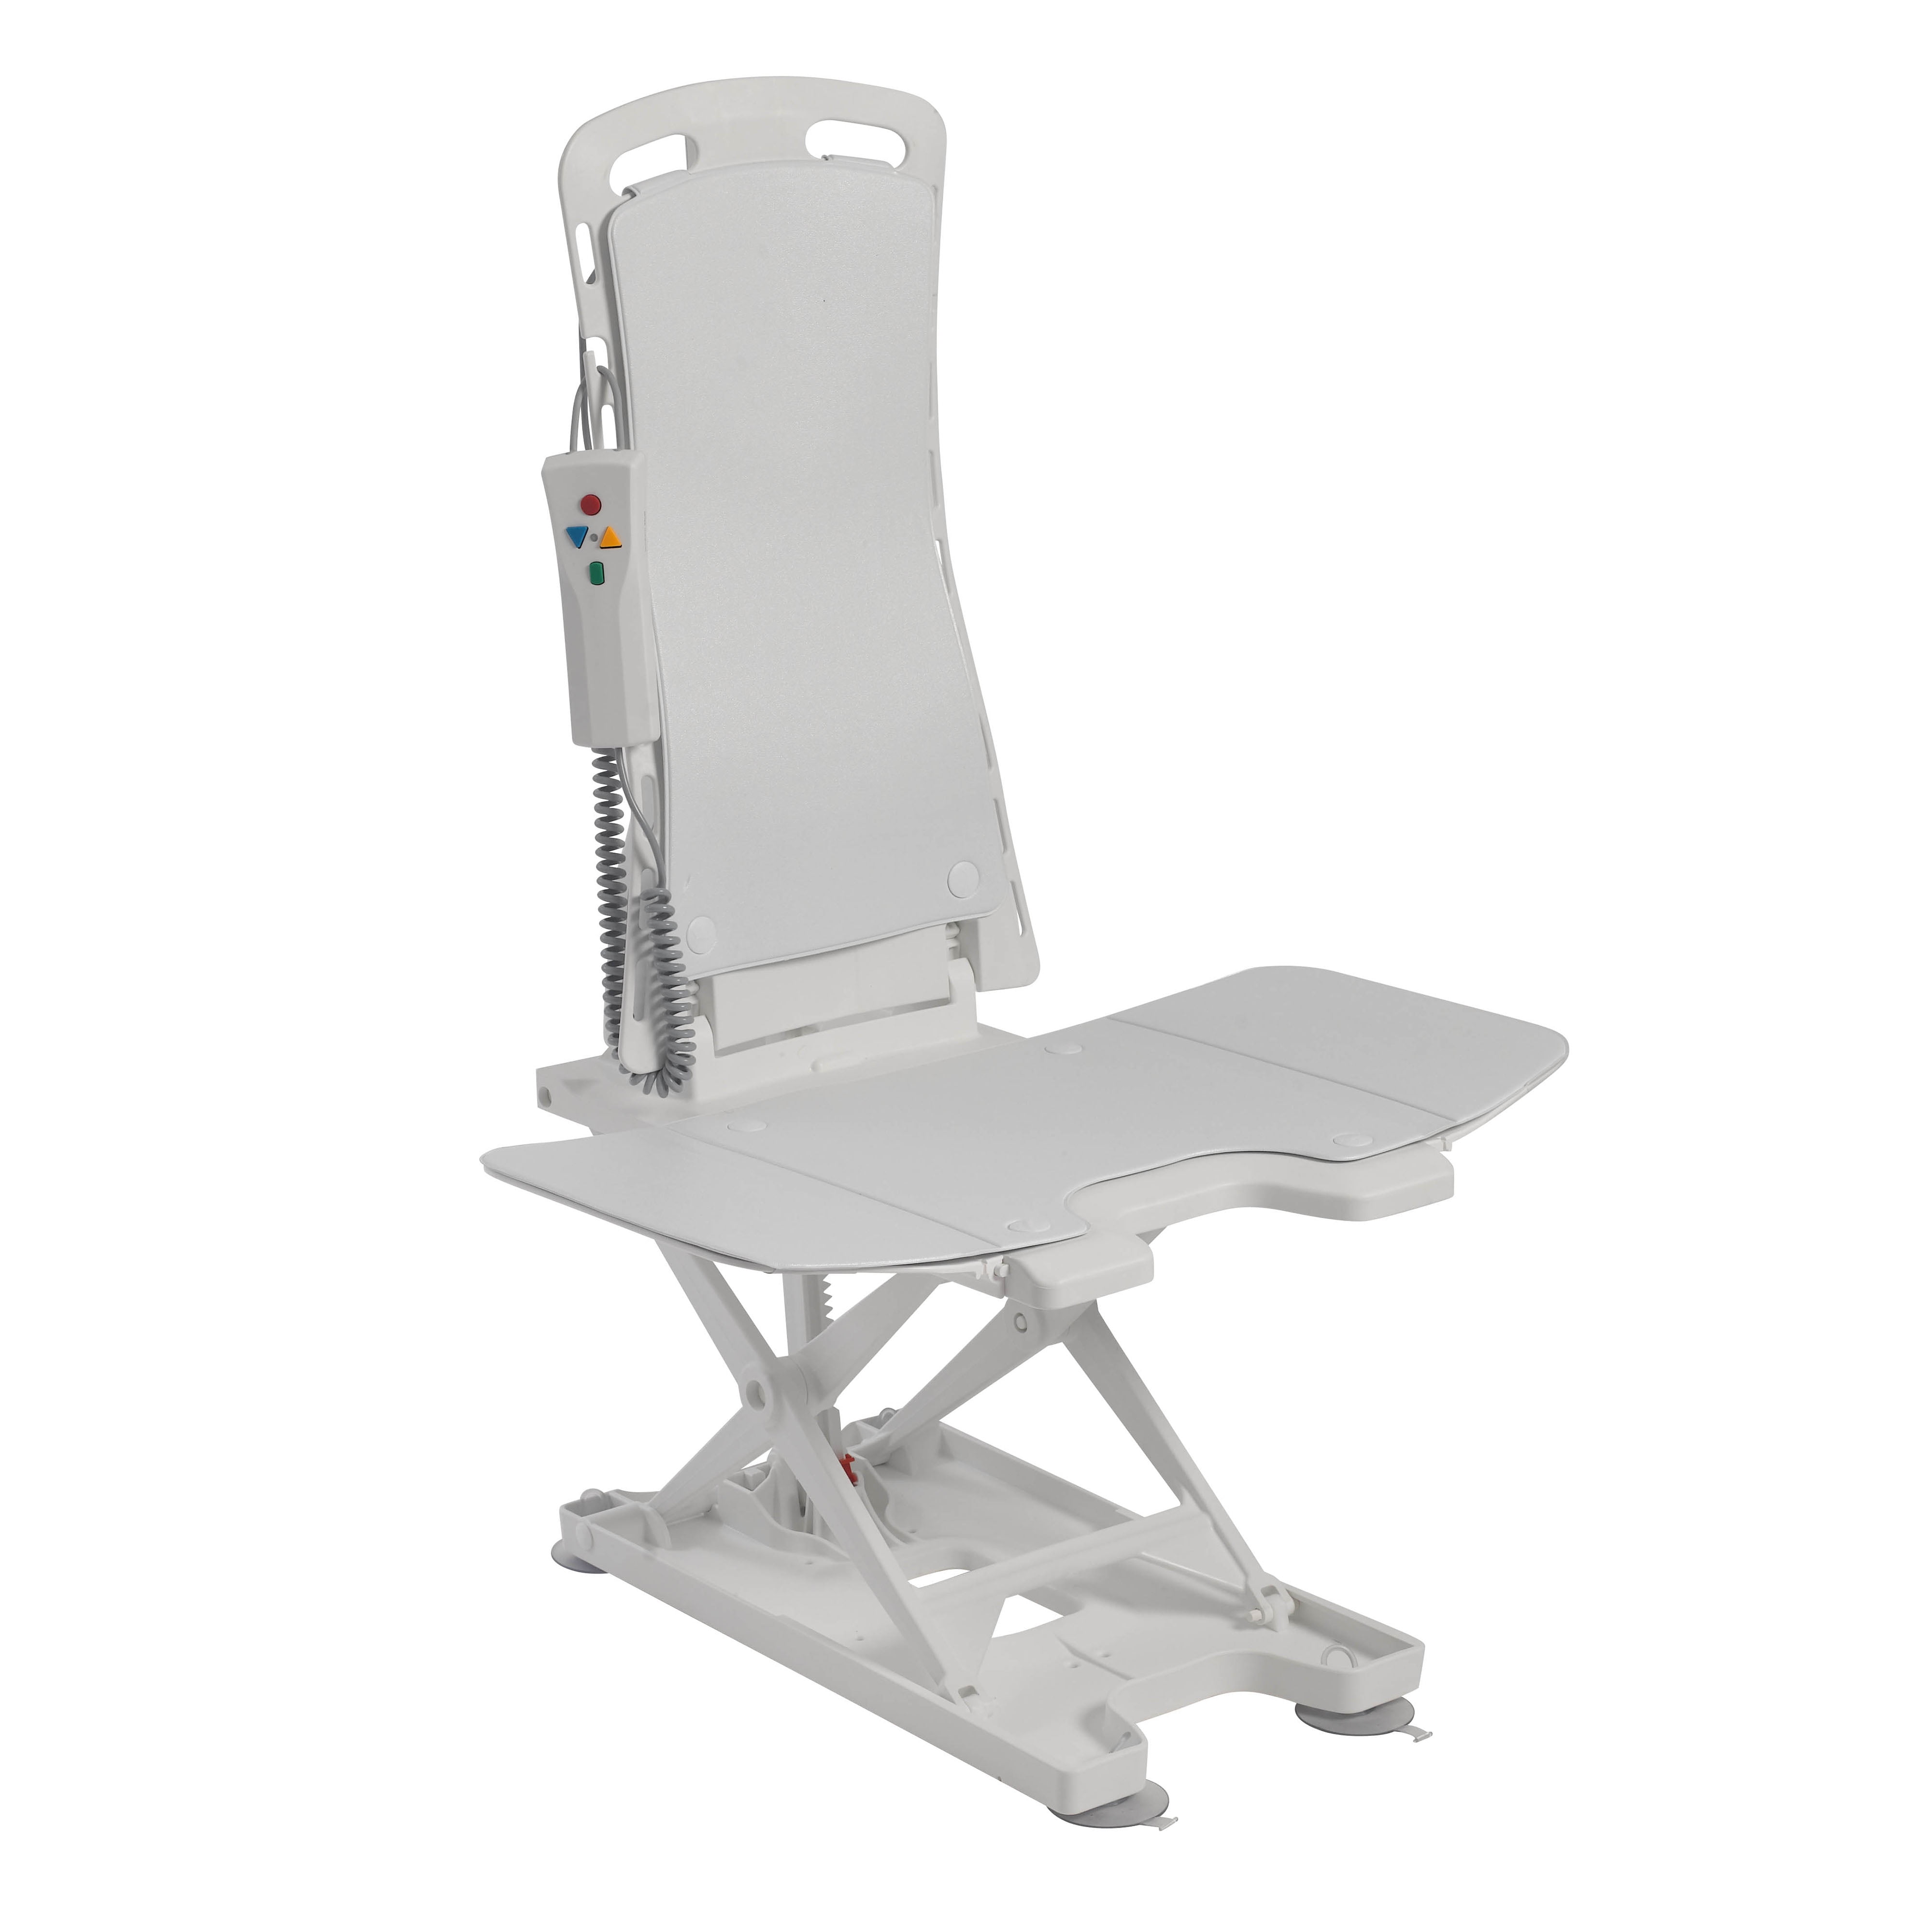 Drive Medical Bellavita Tub Chair Seat Auto Bath Lift White